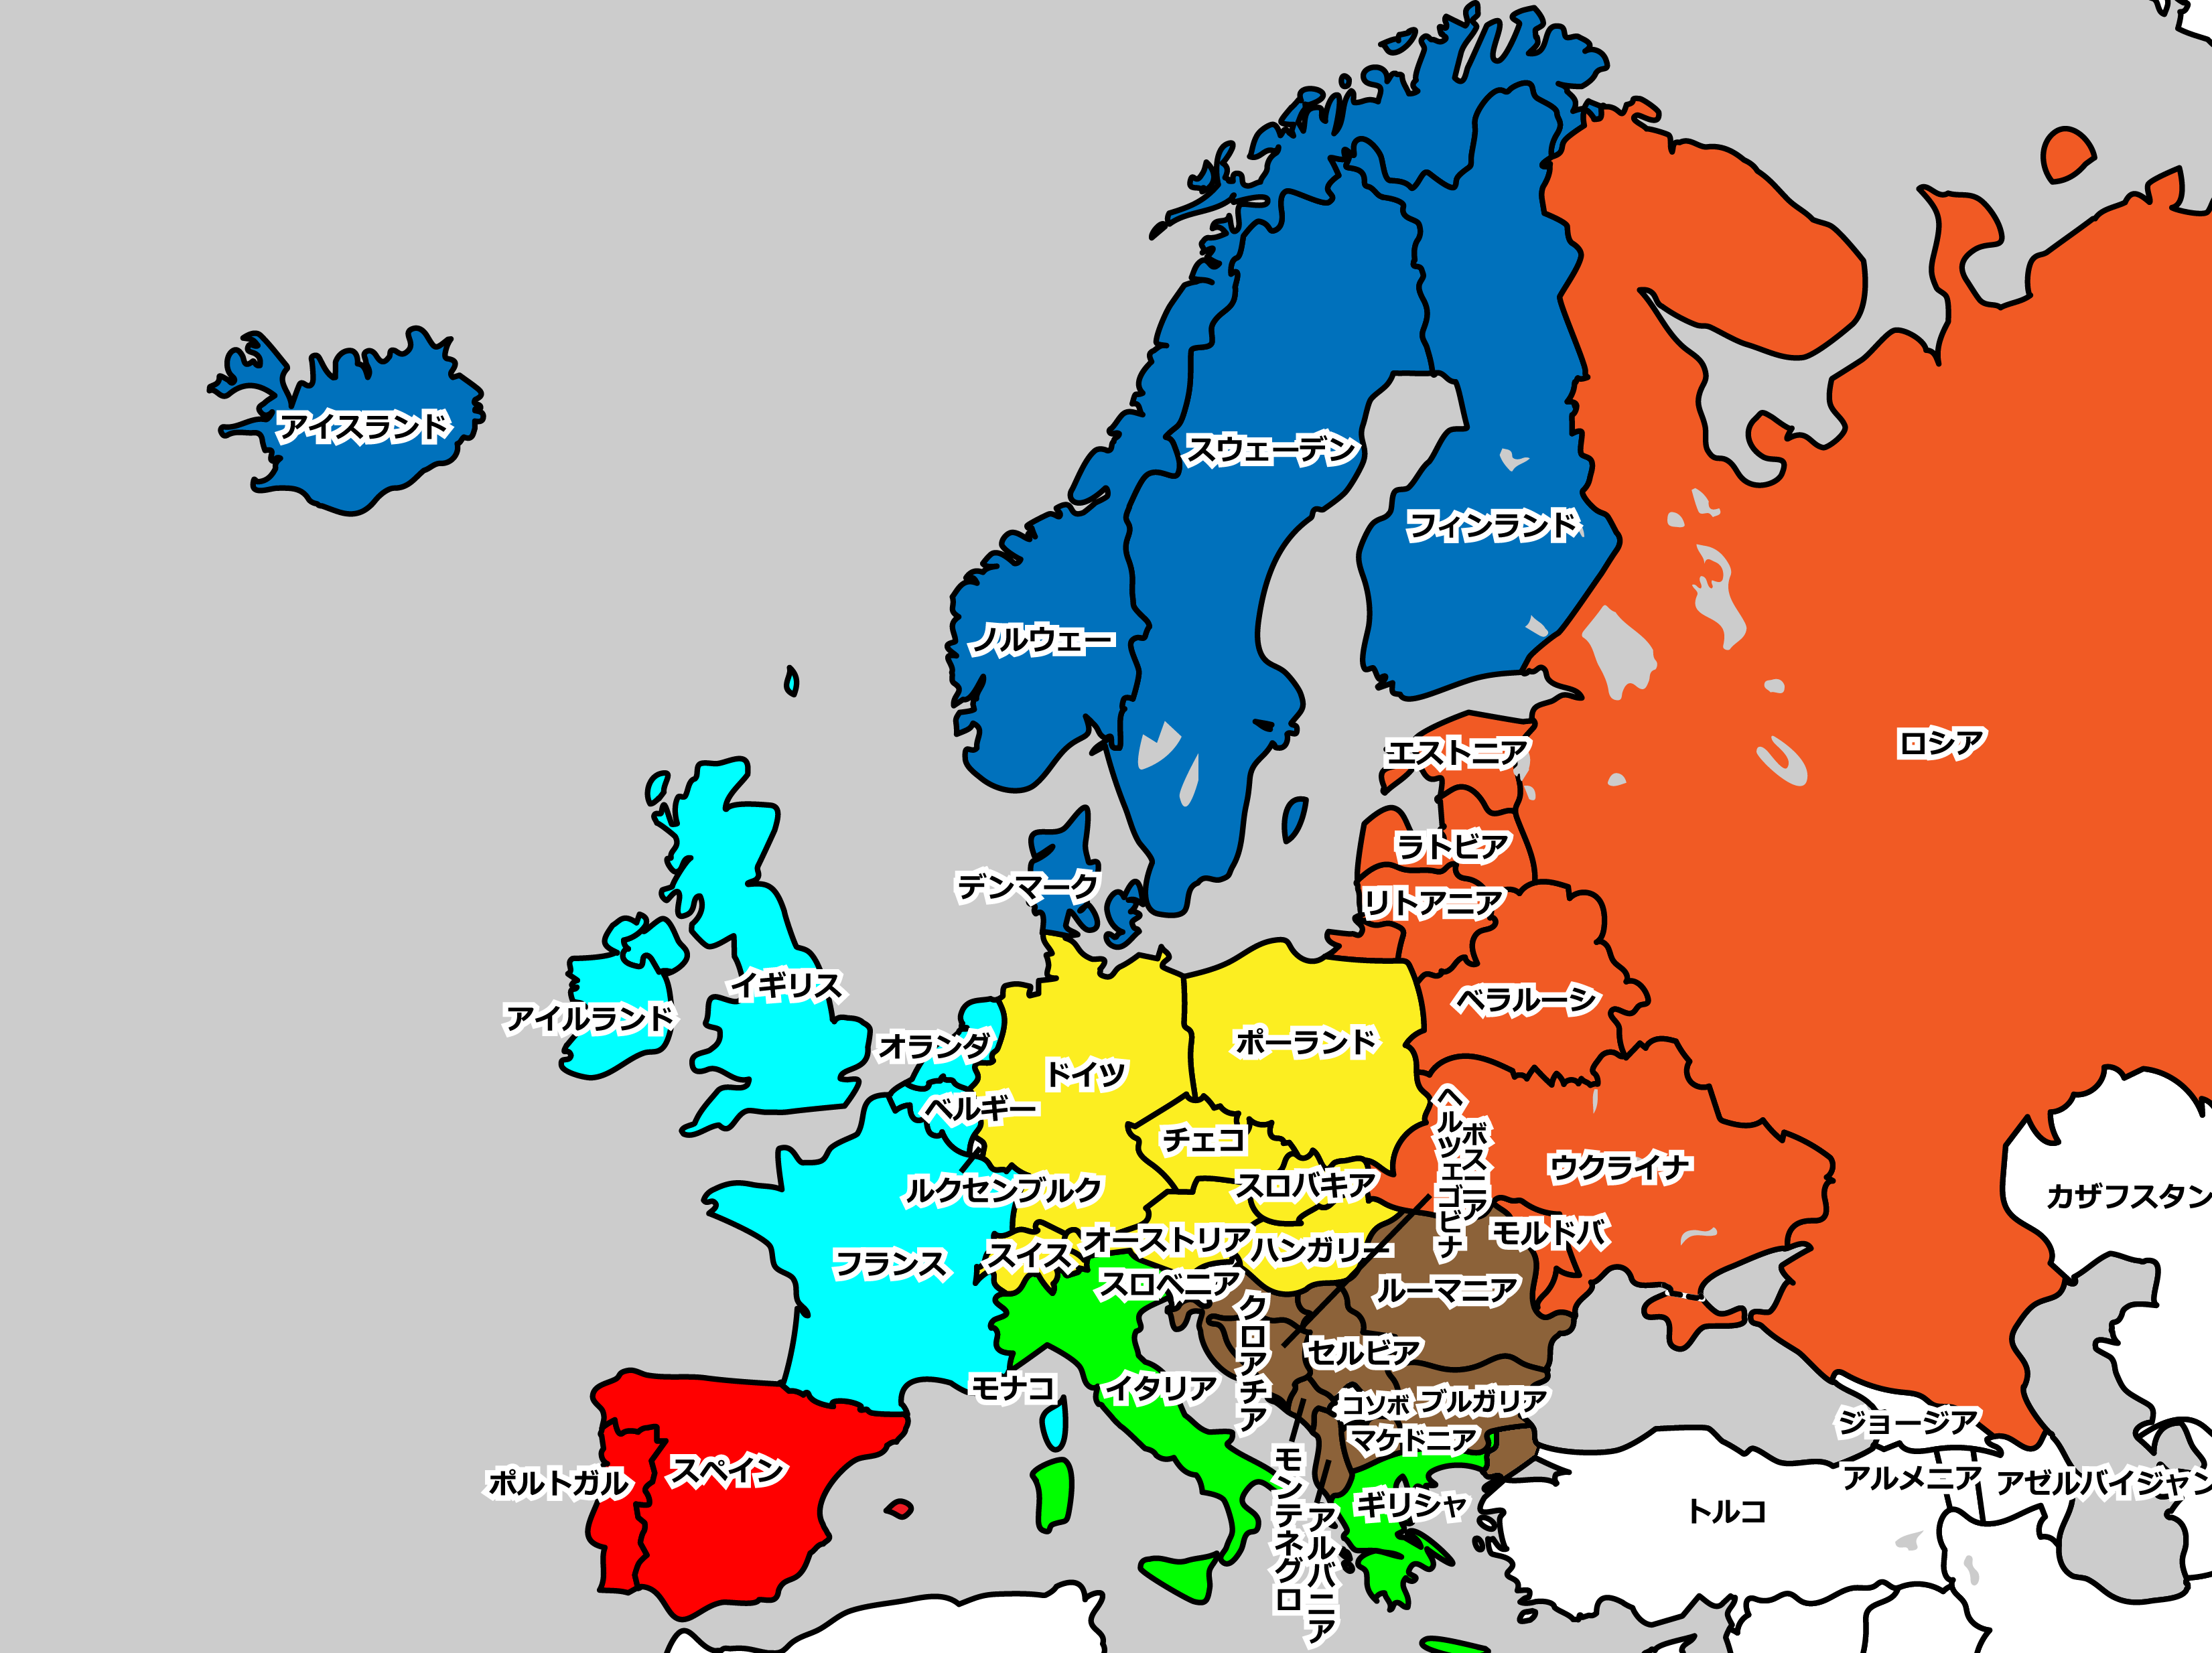 ヨーロッパに属する国と地域区分〜分け方の基準とは？〜